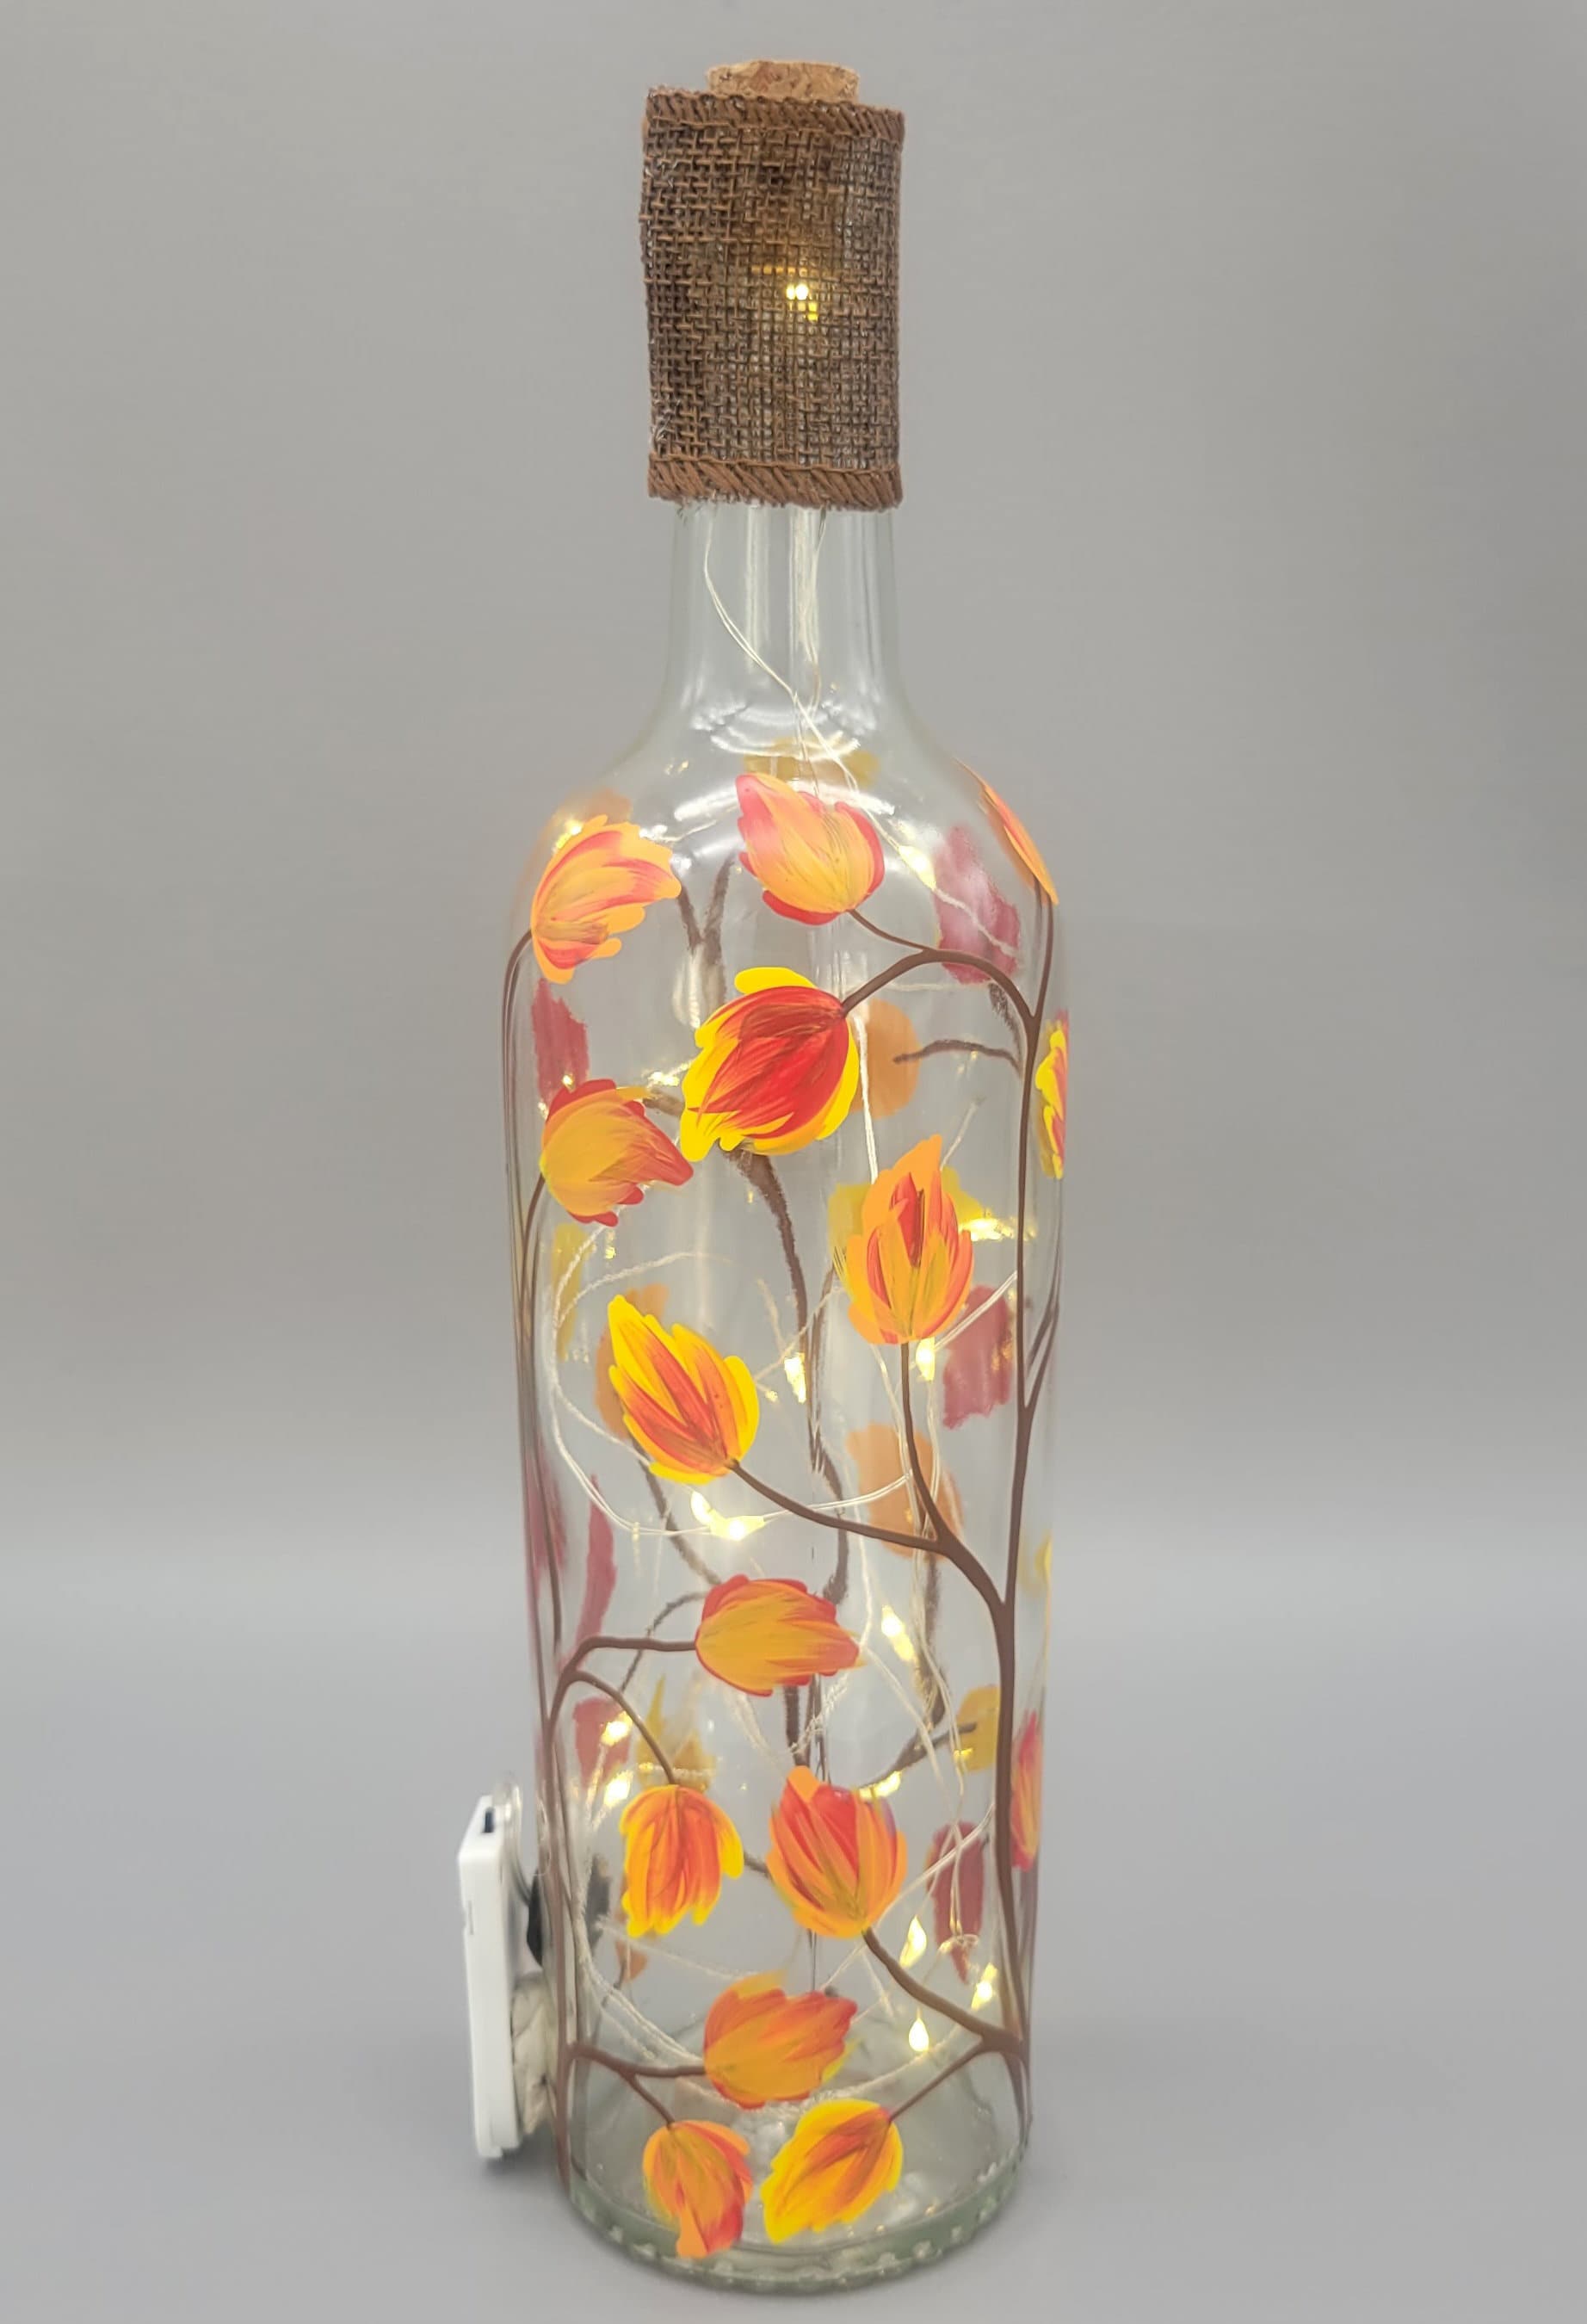 DIY Lighted Glass Bottles for Fall - Burton Avenue